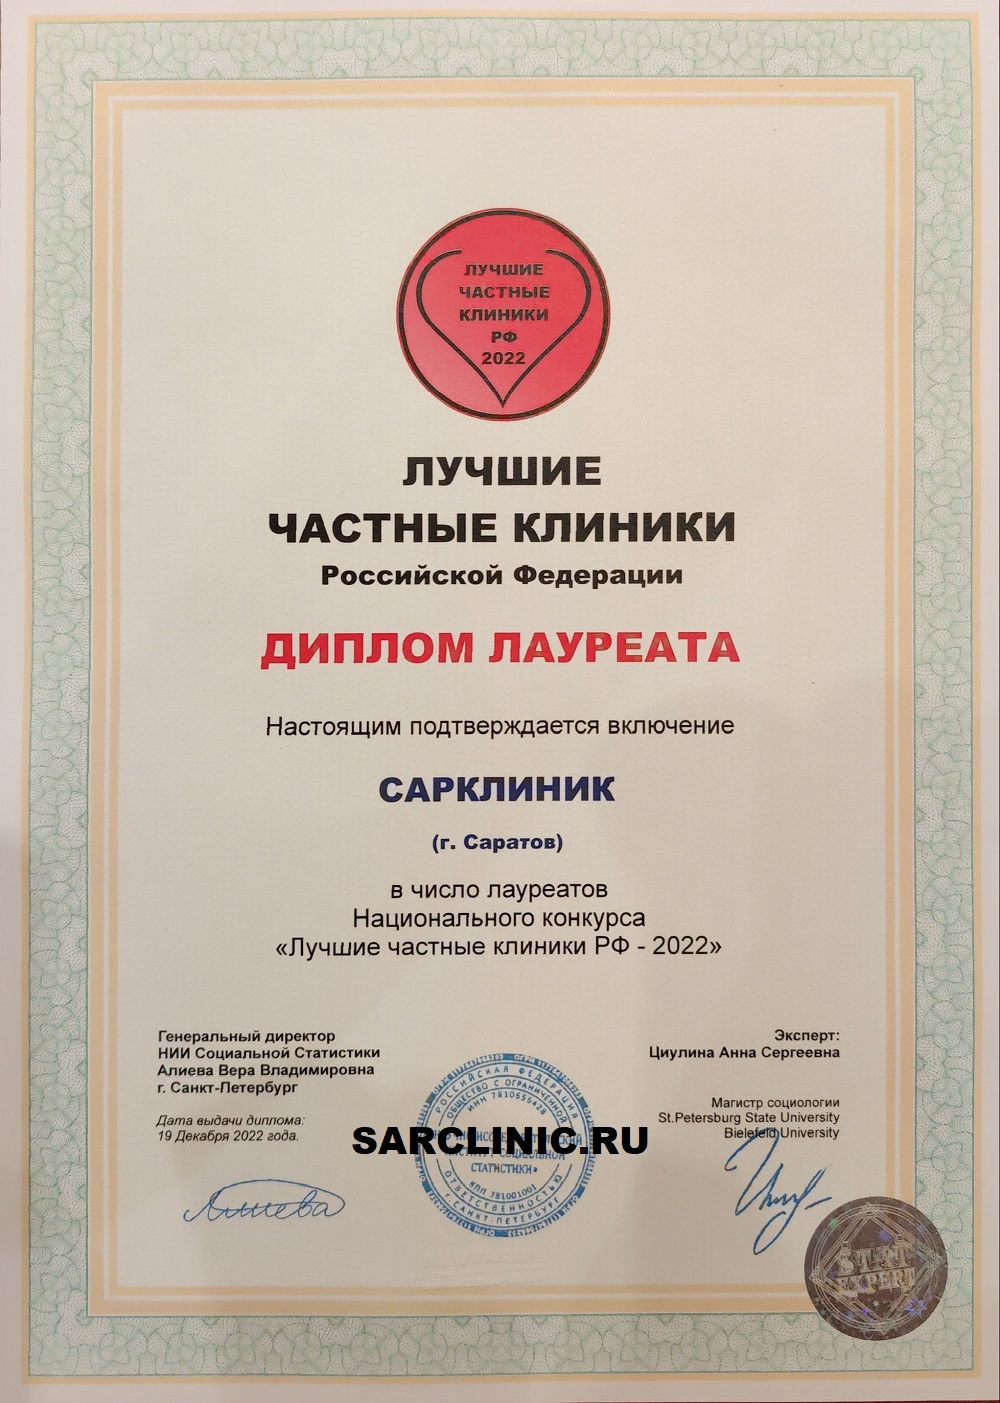 лучшие клиники, лучшие частные клиники, лучшие клиники россии, сарклиник, сарклиник отзывы, сарклиник саратов отзывы